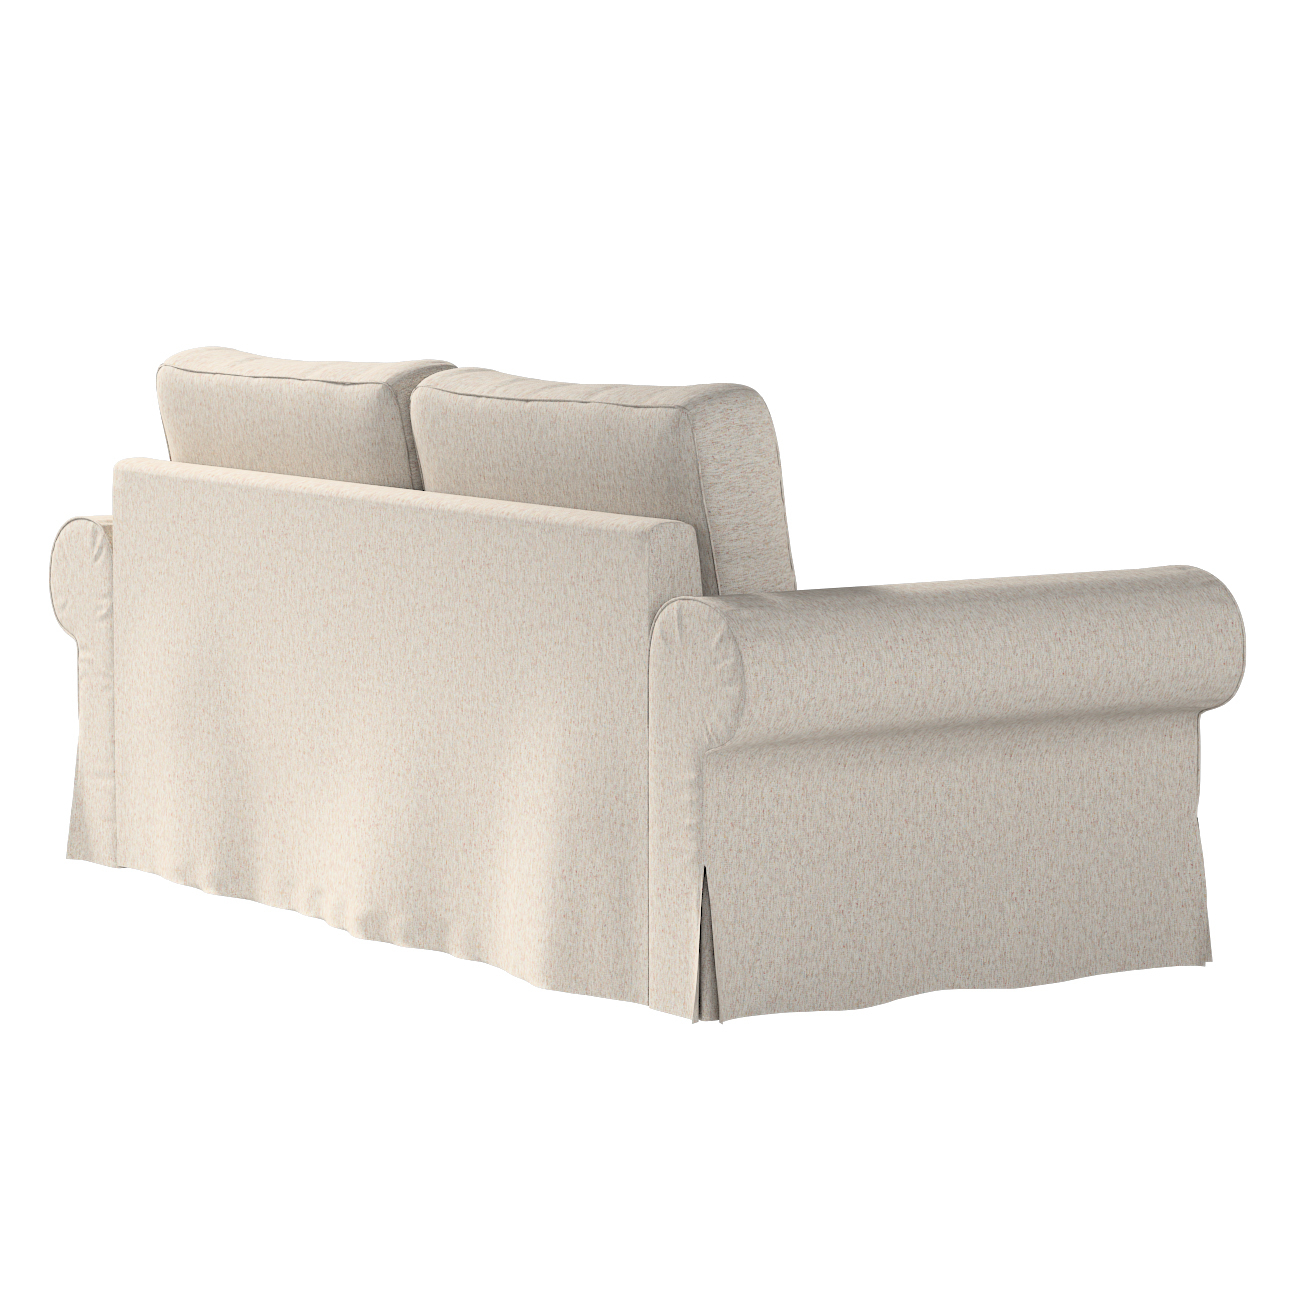 Bezug für Backabro 3-Sitzer Sofa ausklappbar, grau-beige, Bezug für Backabr günstig online kaufen